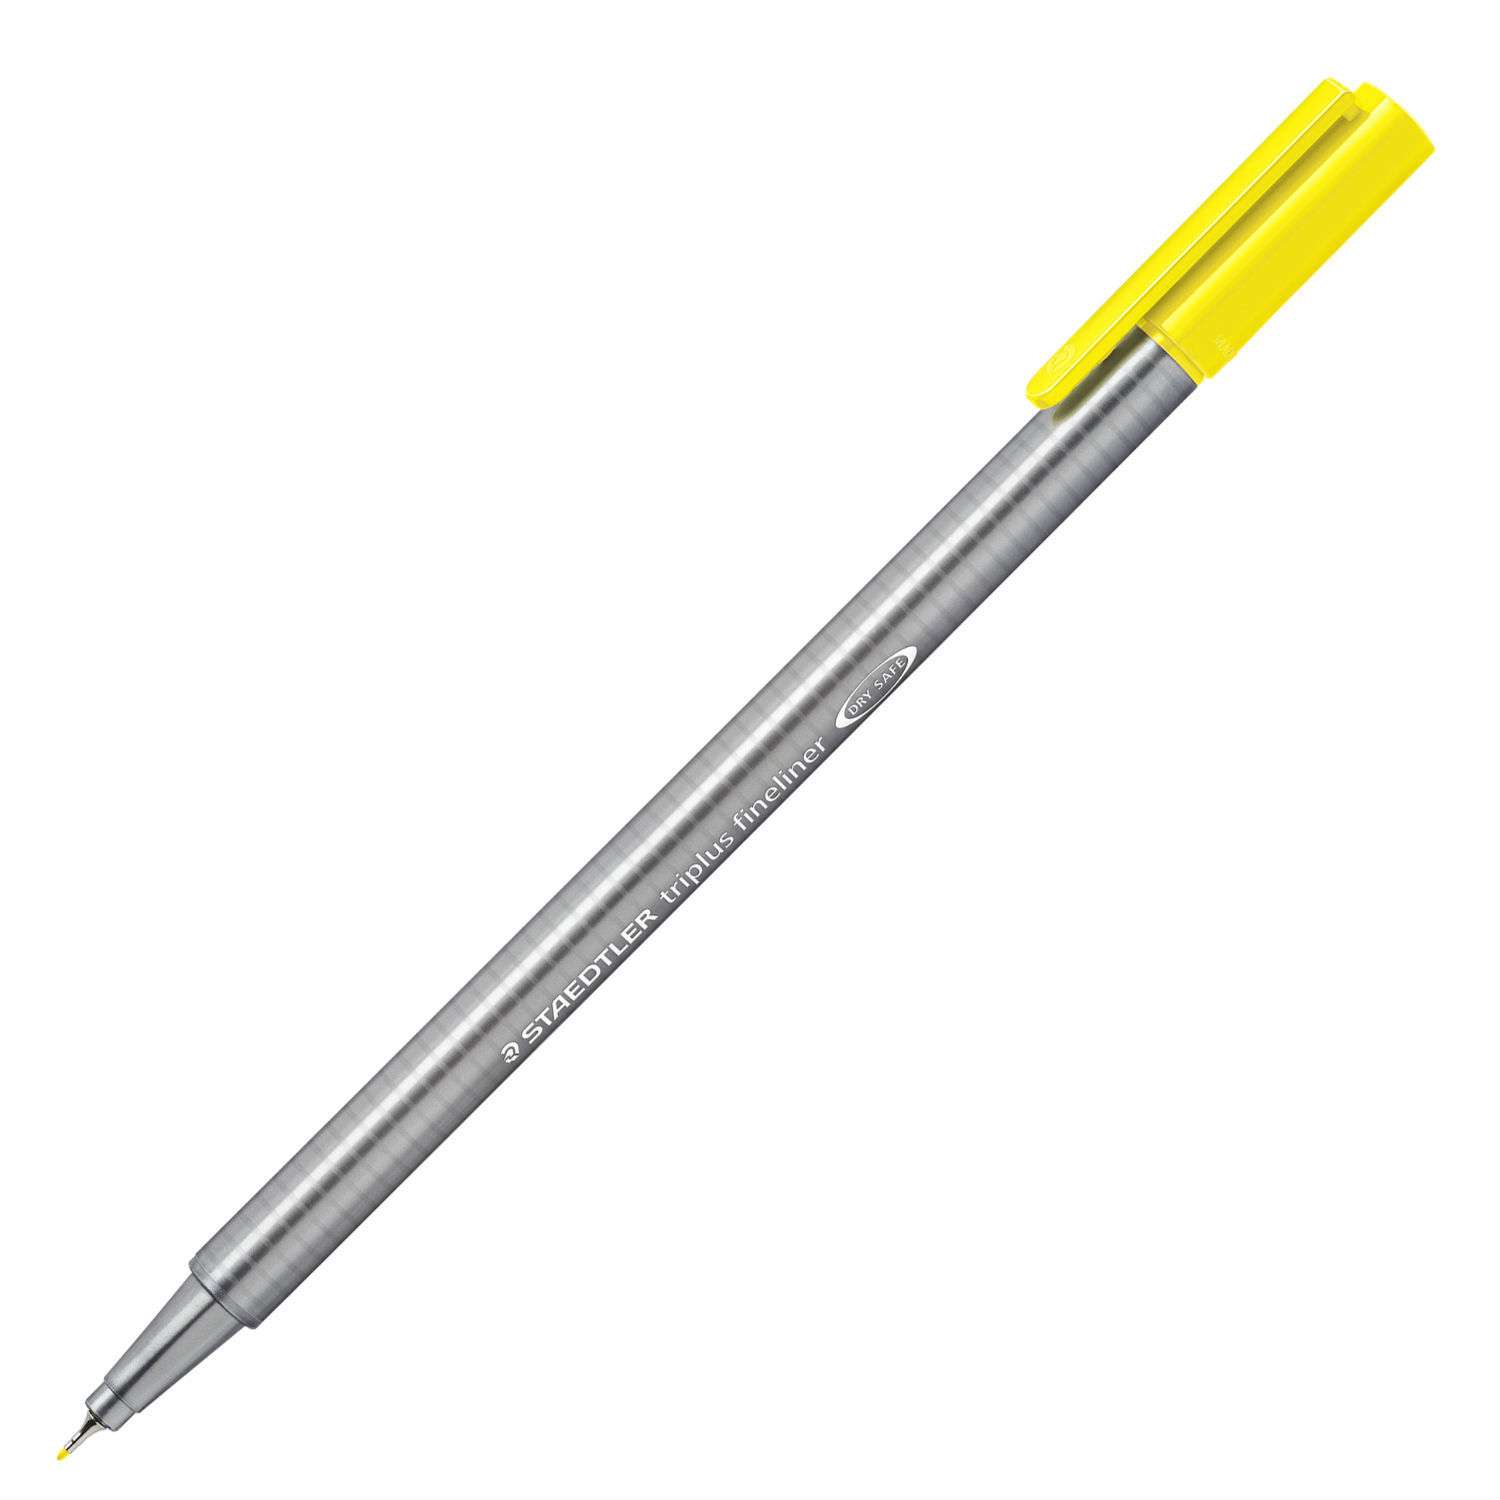 Ручка капиллярная Staedtler еTriplus трехгранная Желтая - фото 1